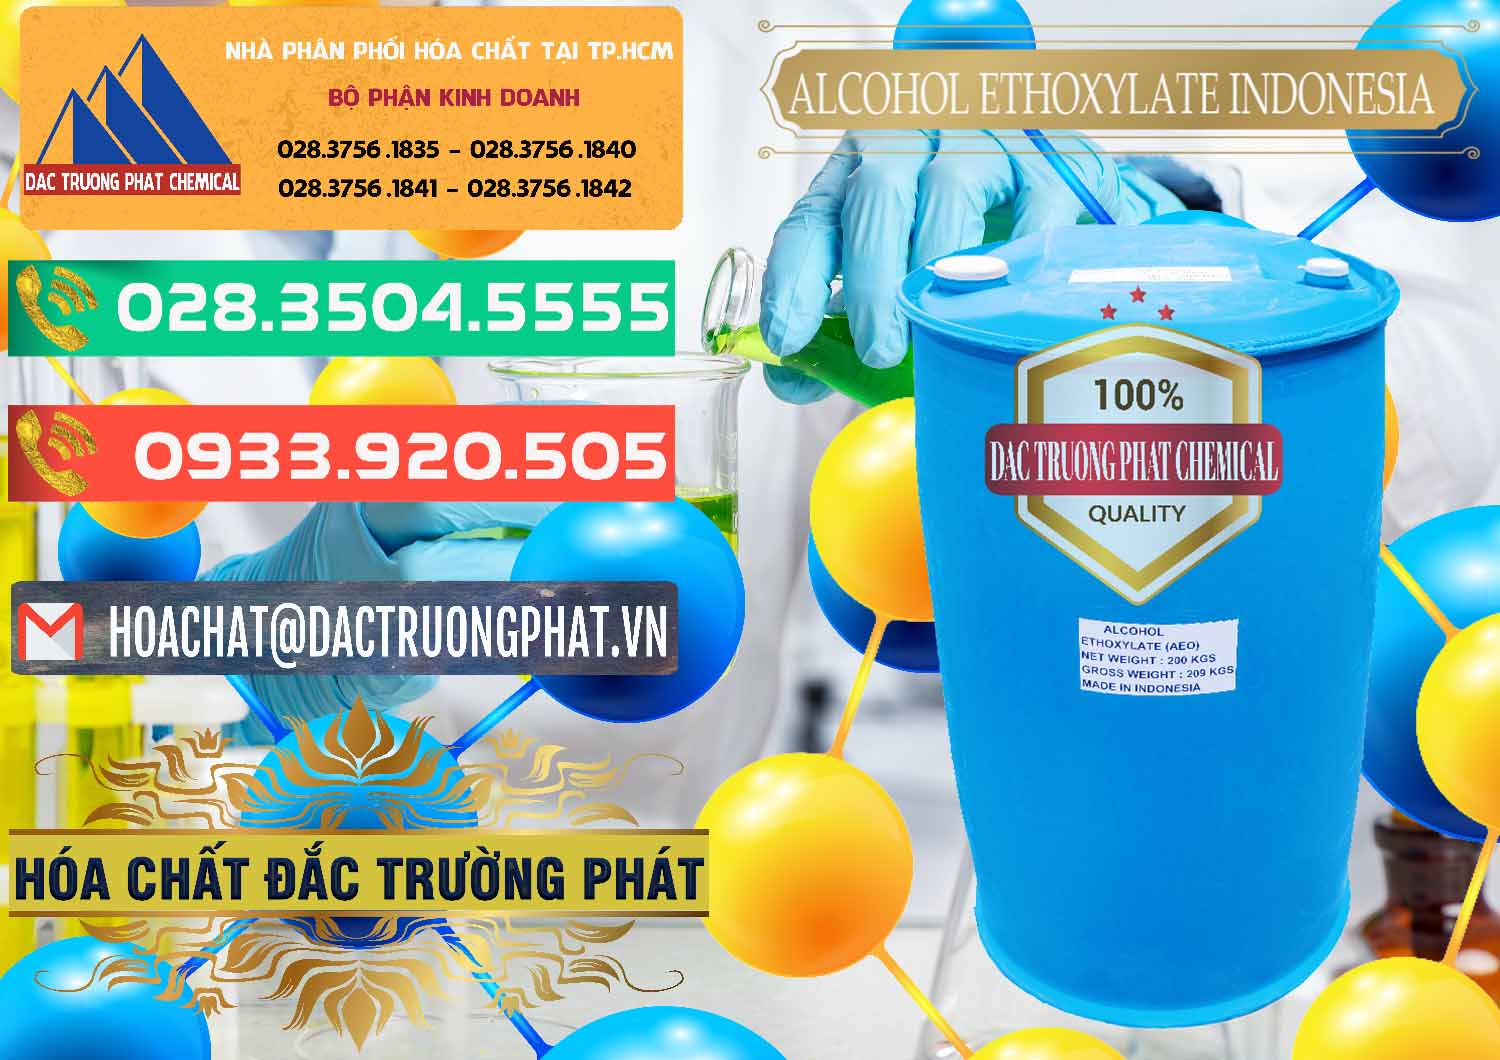 Nơi chuyên cung cấp và bán Alcohol Ethoxylate Indonesia - 0308 - Cty phân phối - nhập khẩu hóa chất tại TP.HCM - congtyhoachat.com.vn